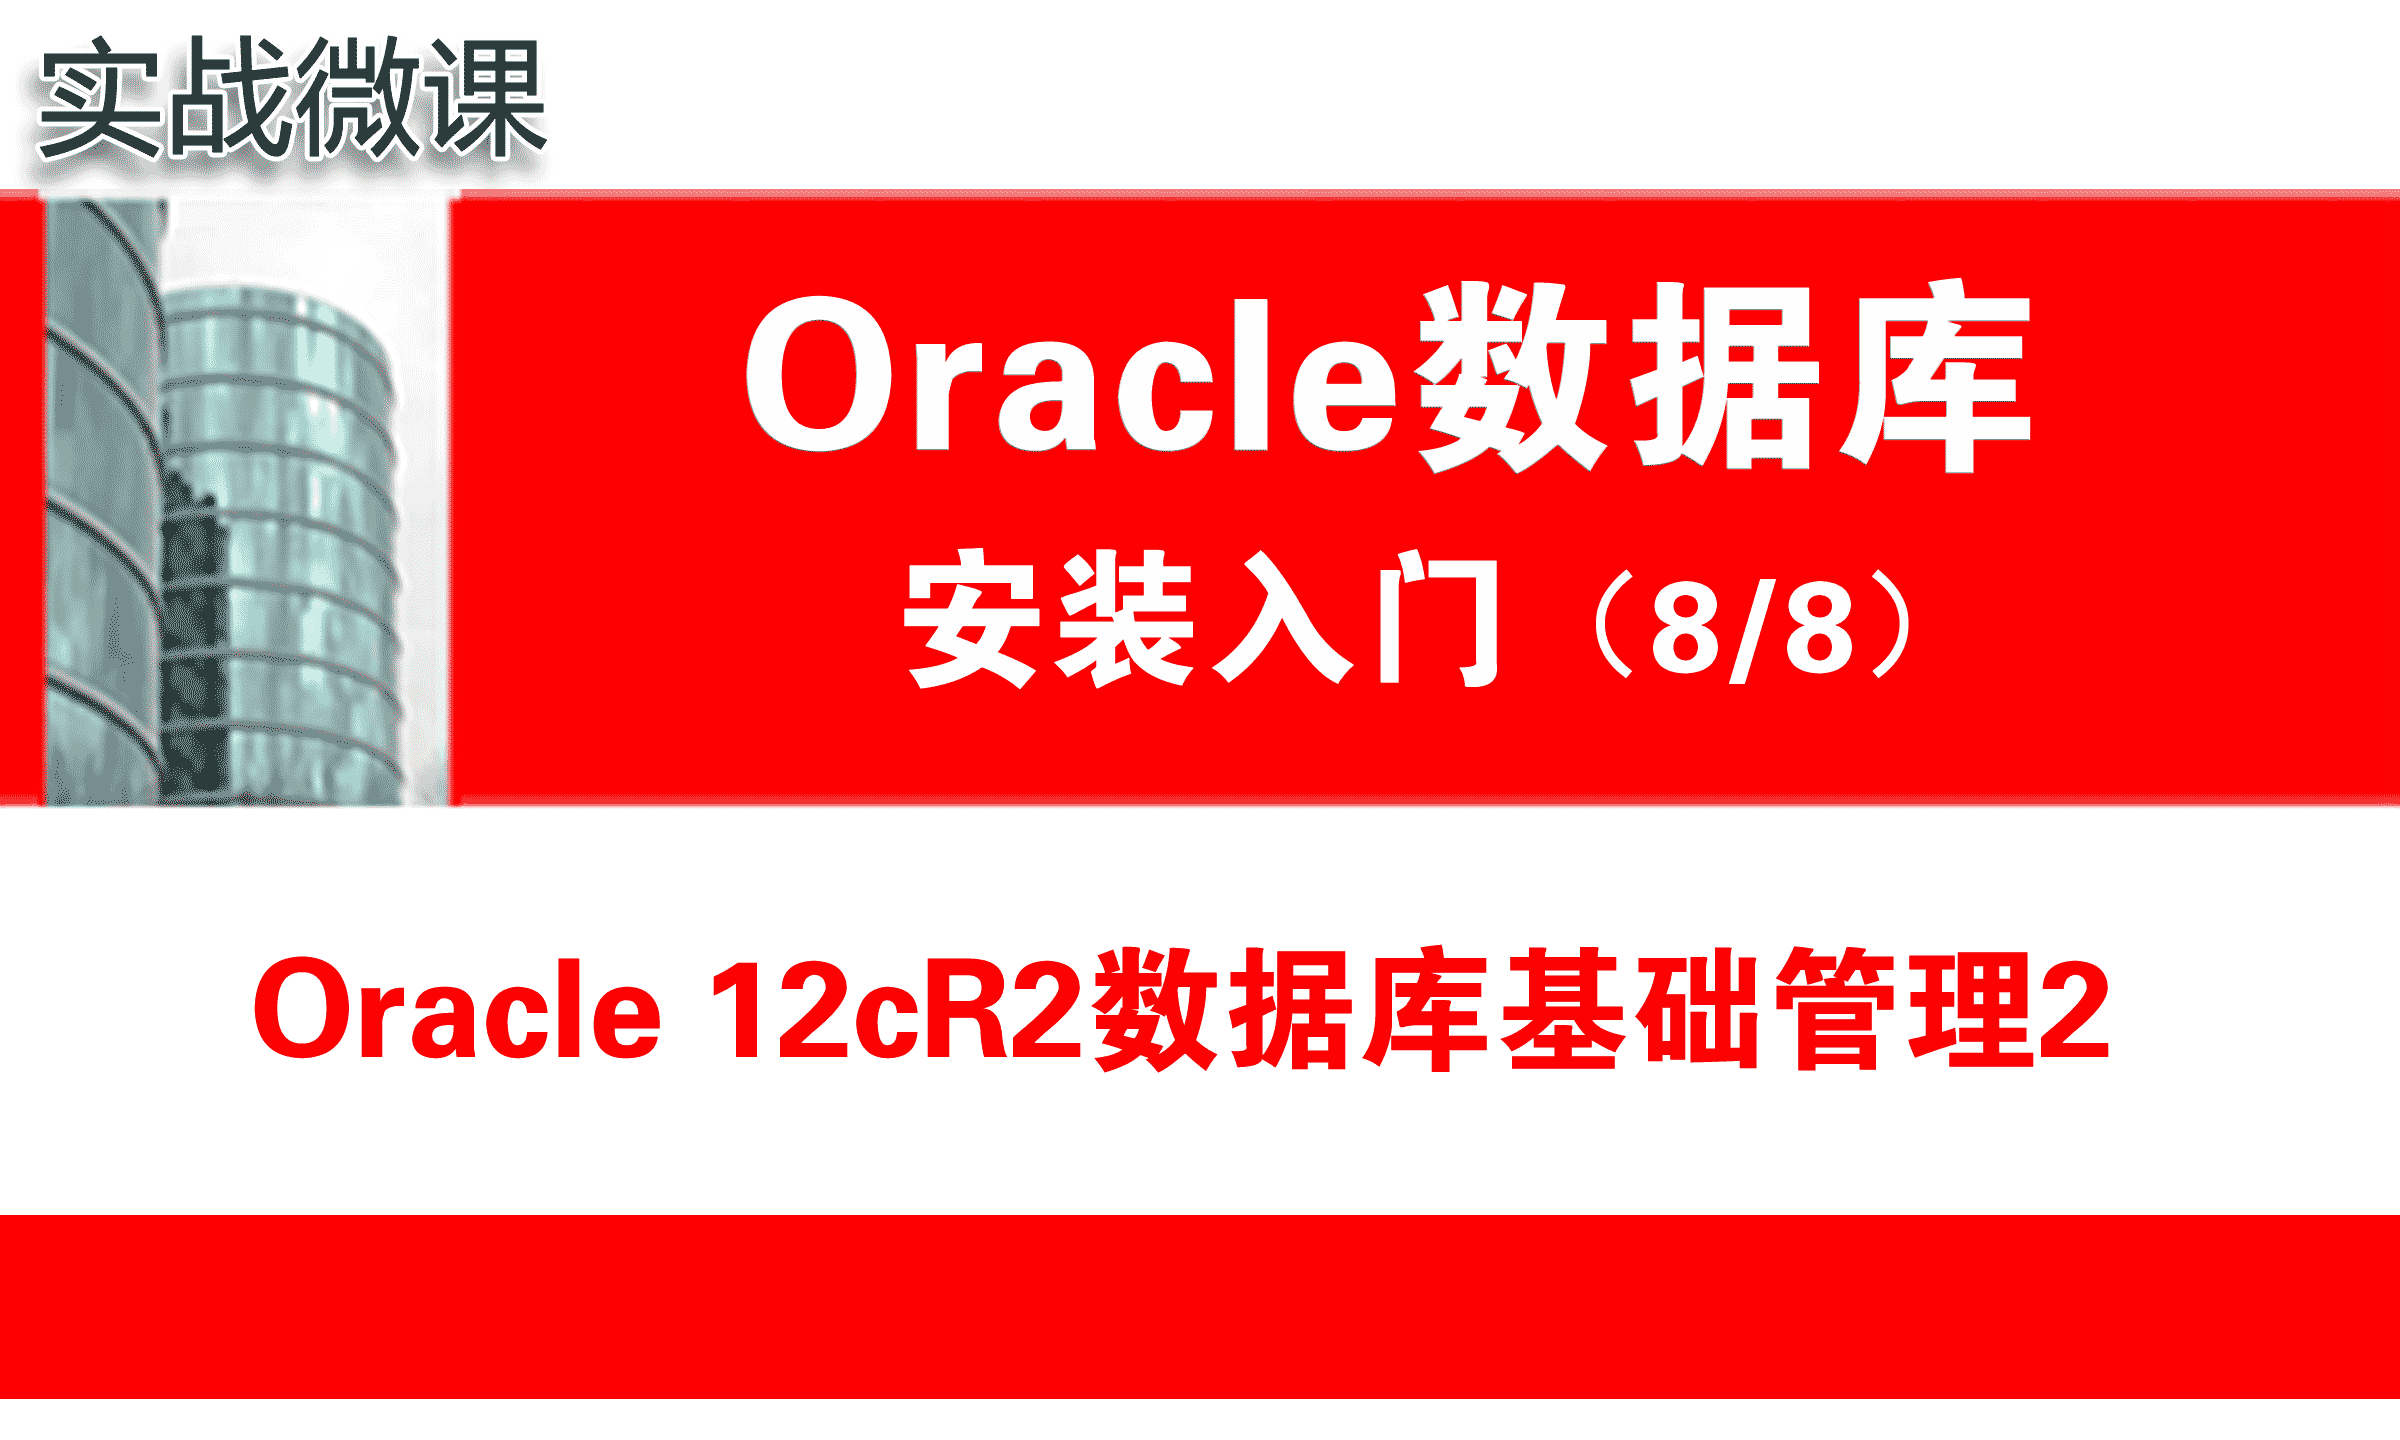 Oracle数据库基础管理2( 12cR2 )_Oracle安装入门_实战微课